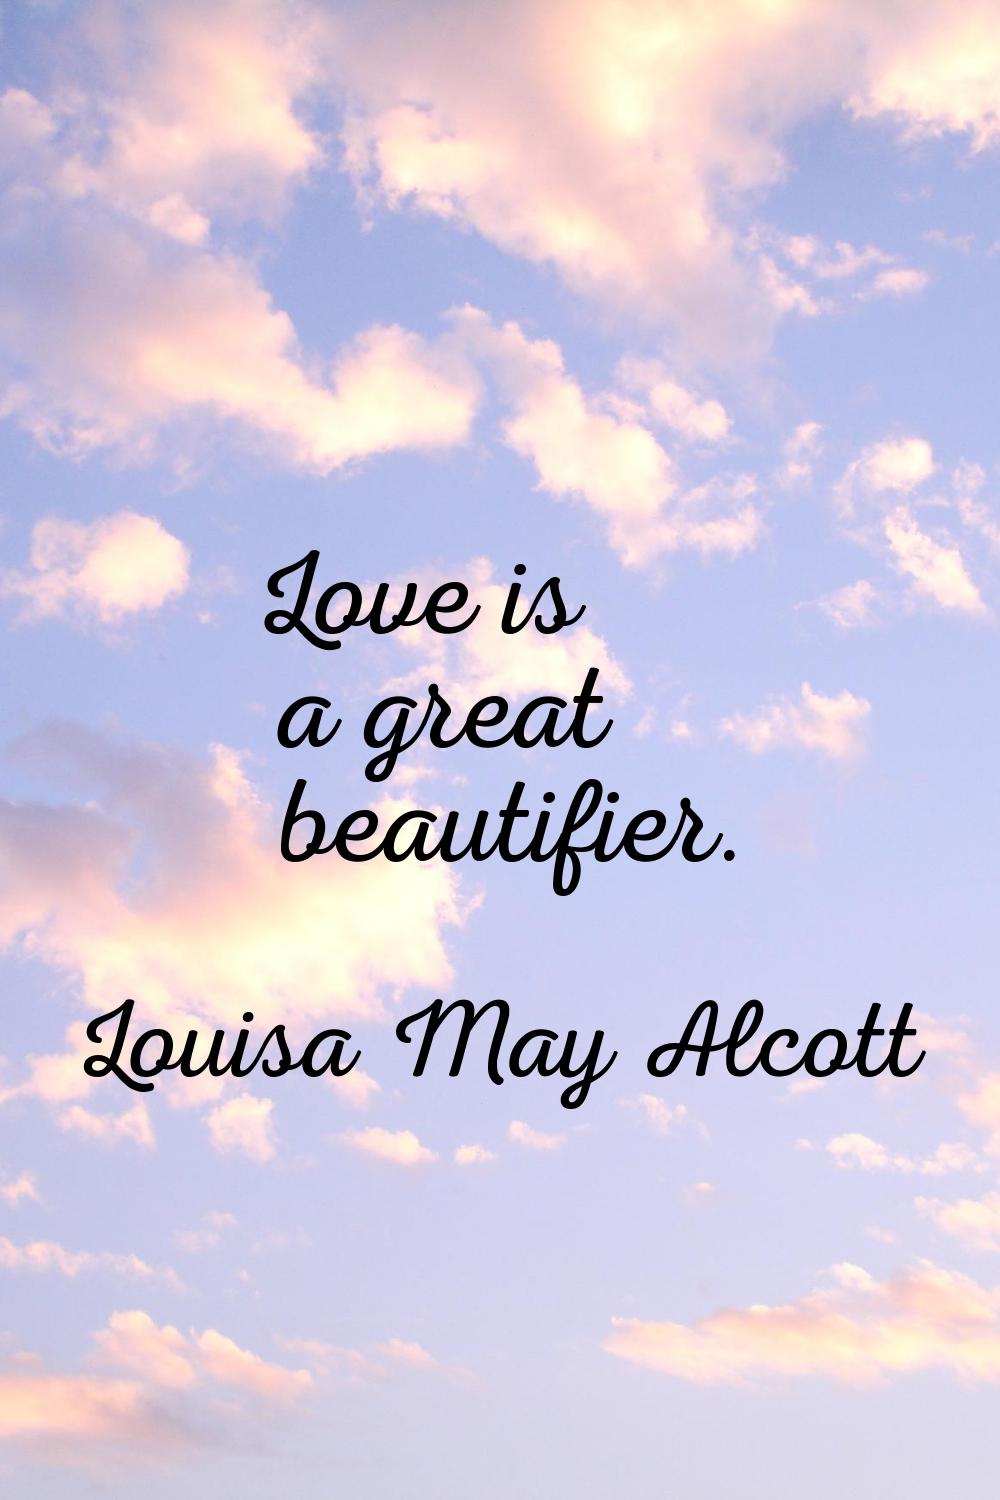 Love is a great beautifier.